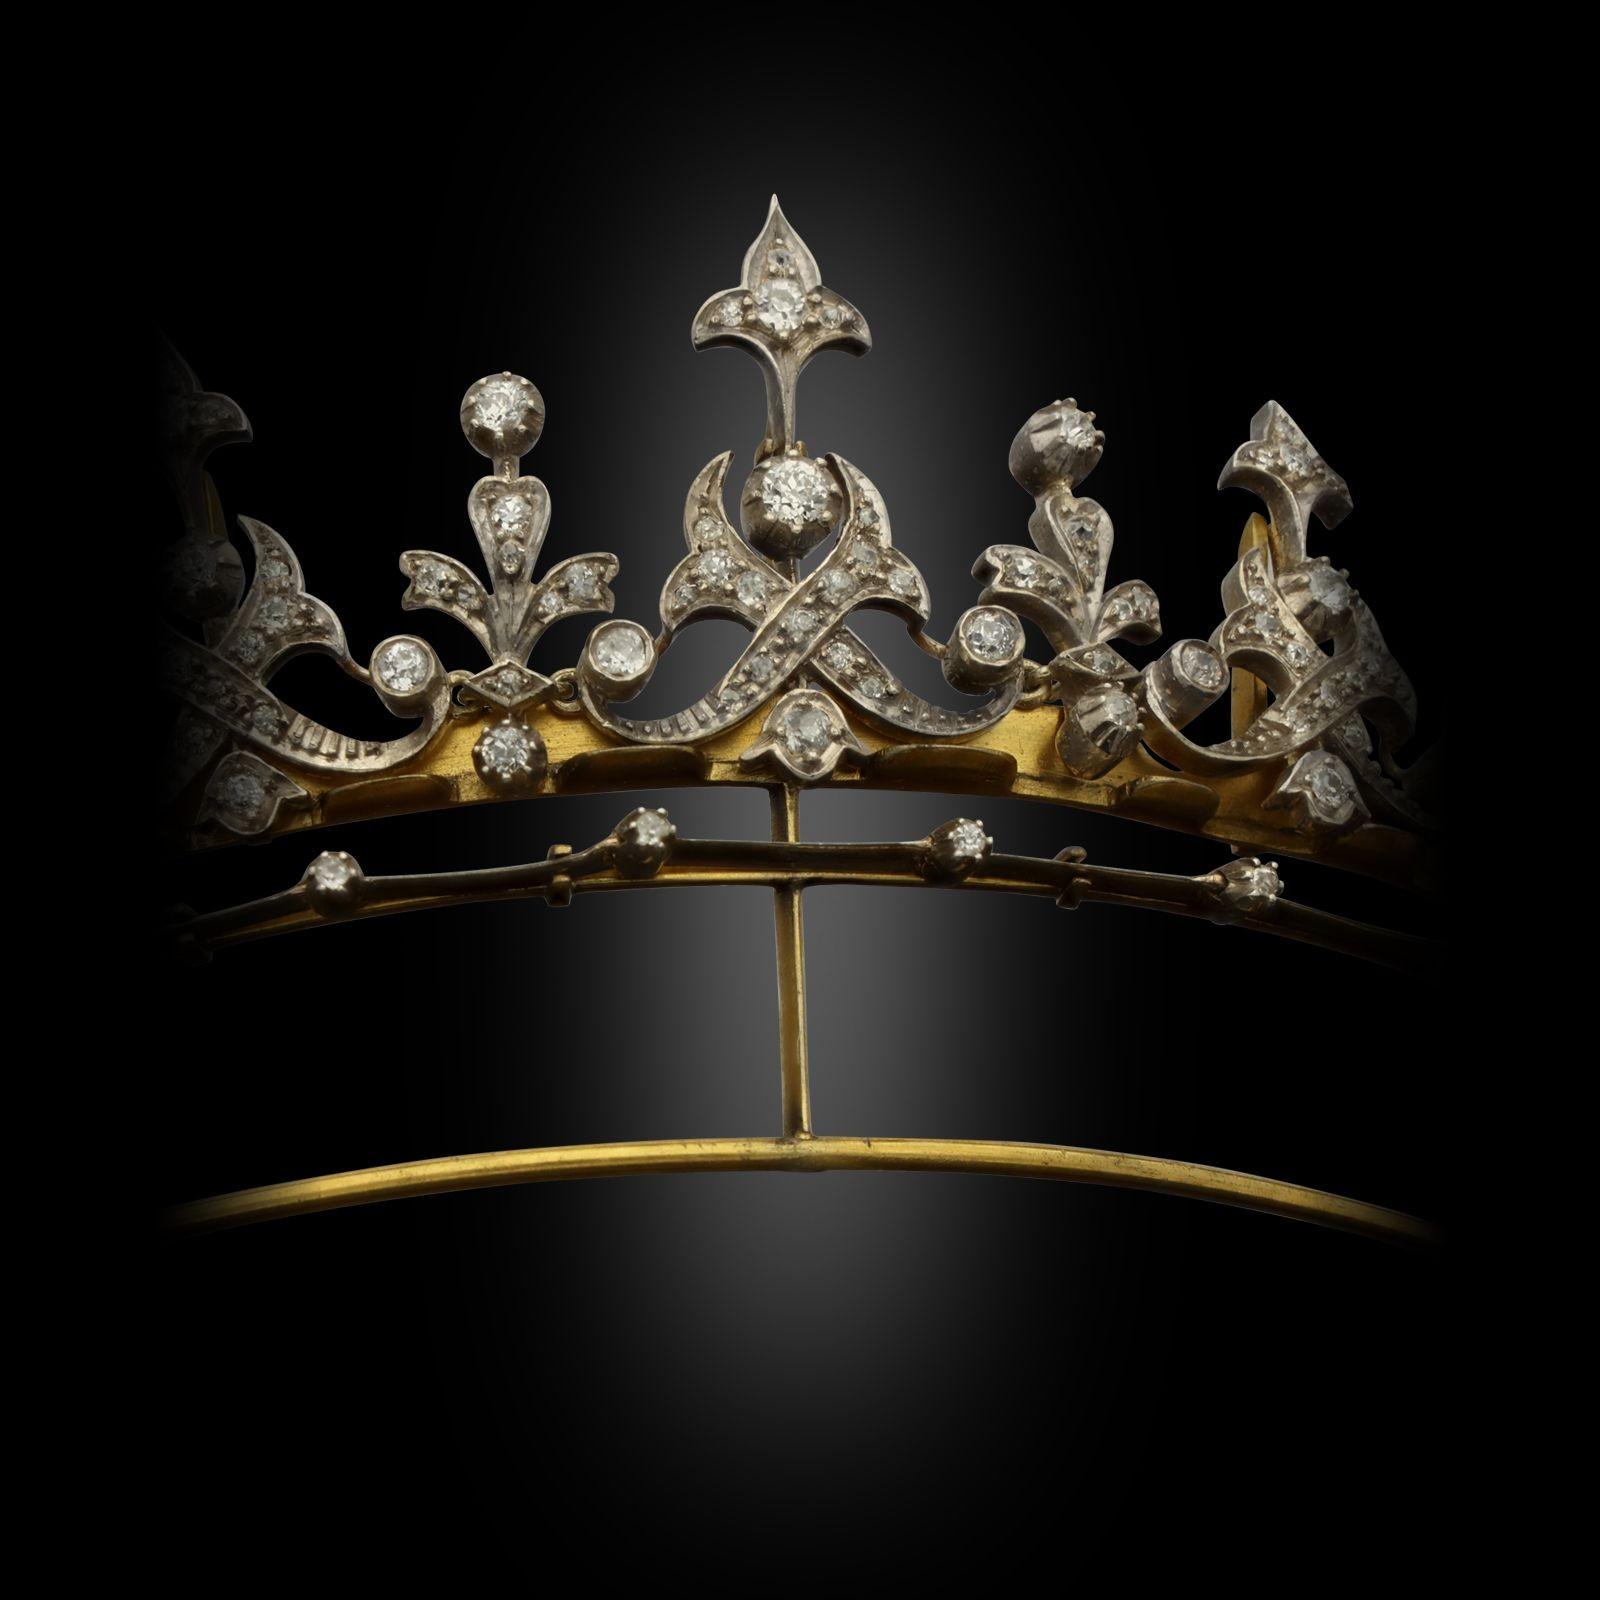 fringe tiara as necklace